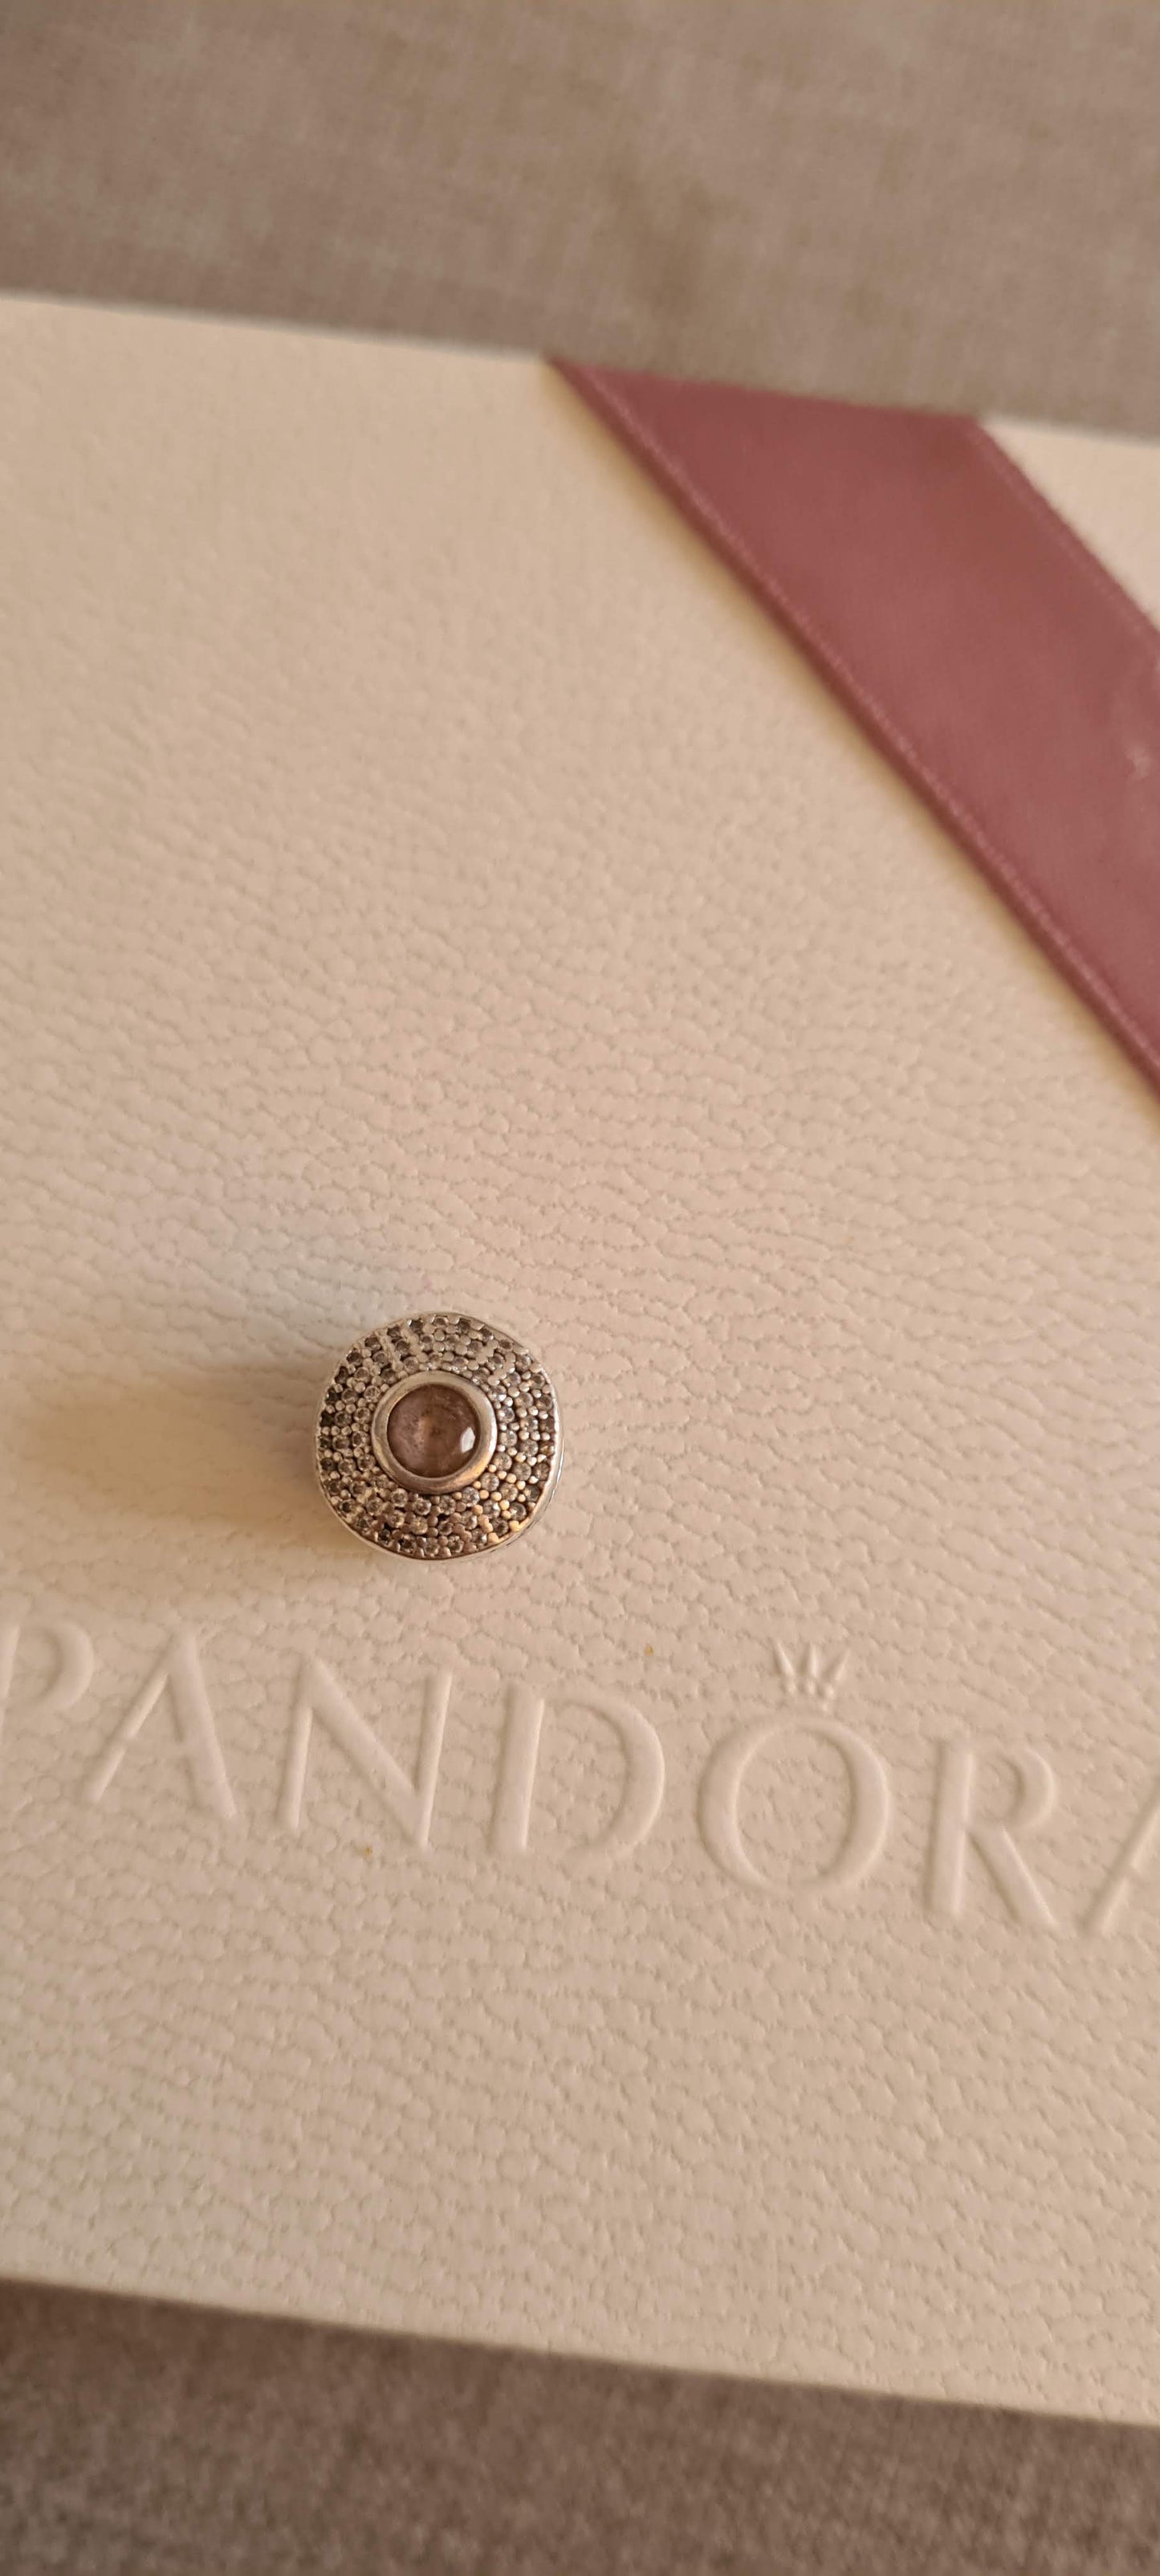 Genuine Pandora Pave Charm with Pink Stone